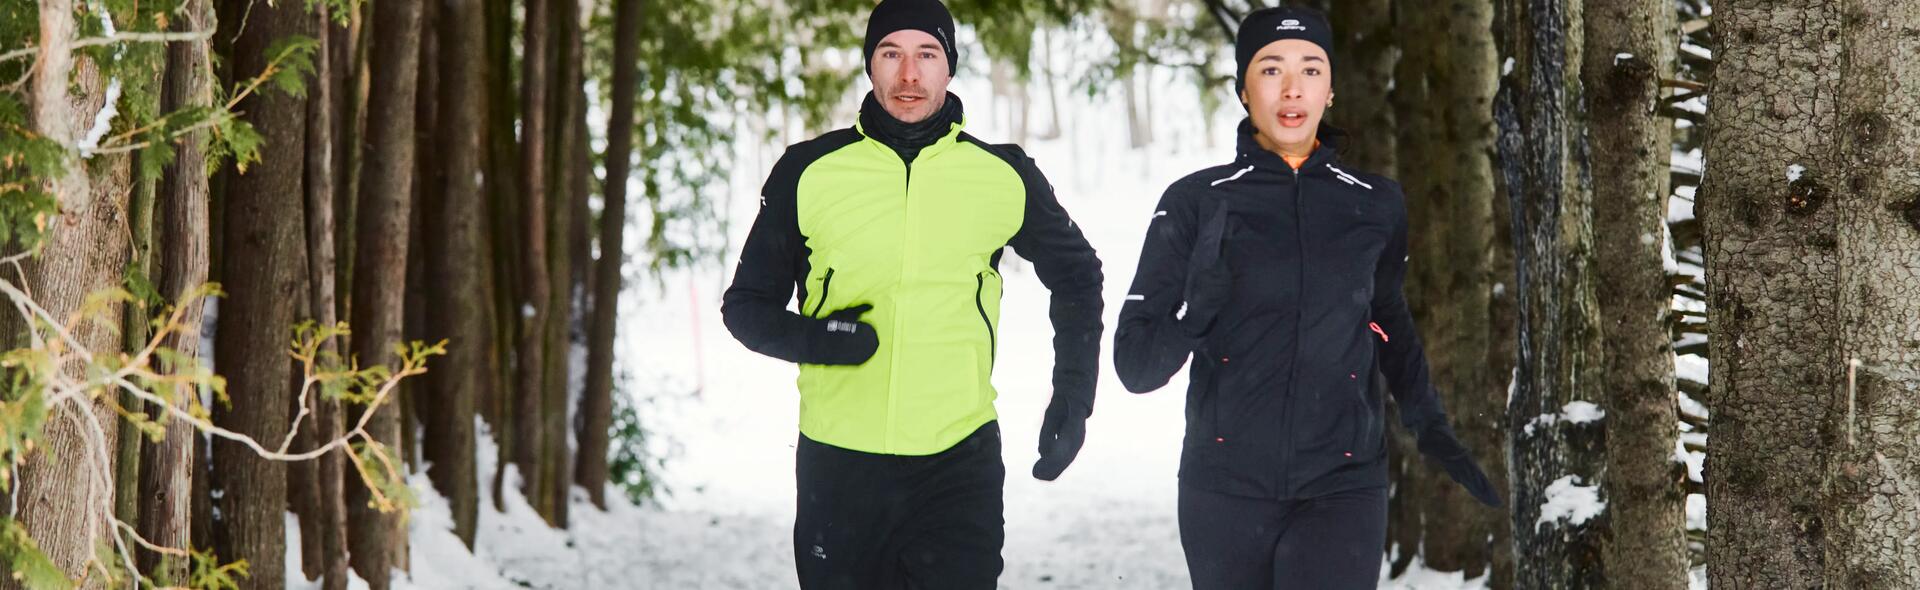 mężczyzna i kobieta biegnący zimą w czapkach i strojach do biegania